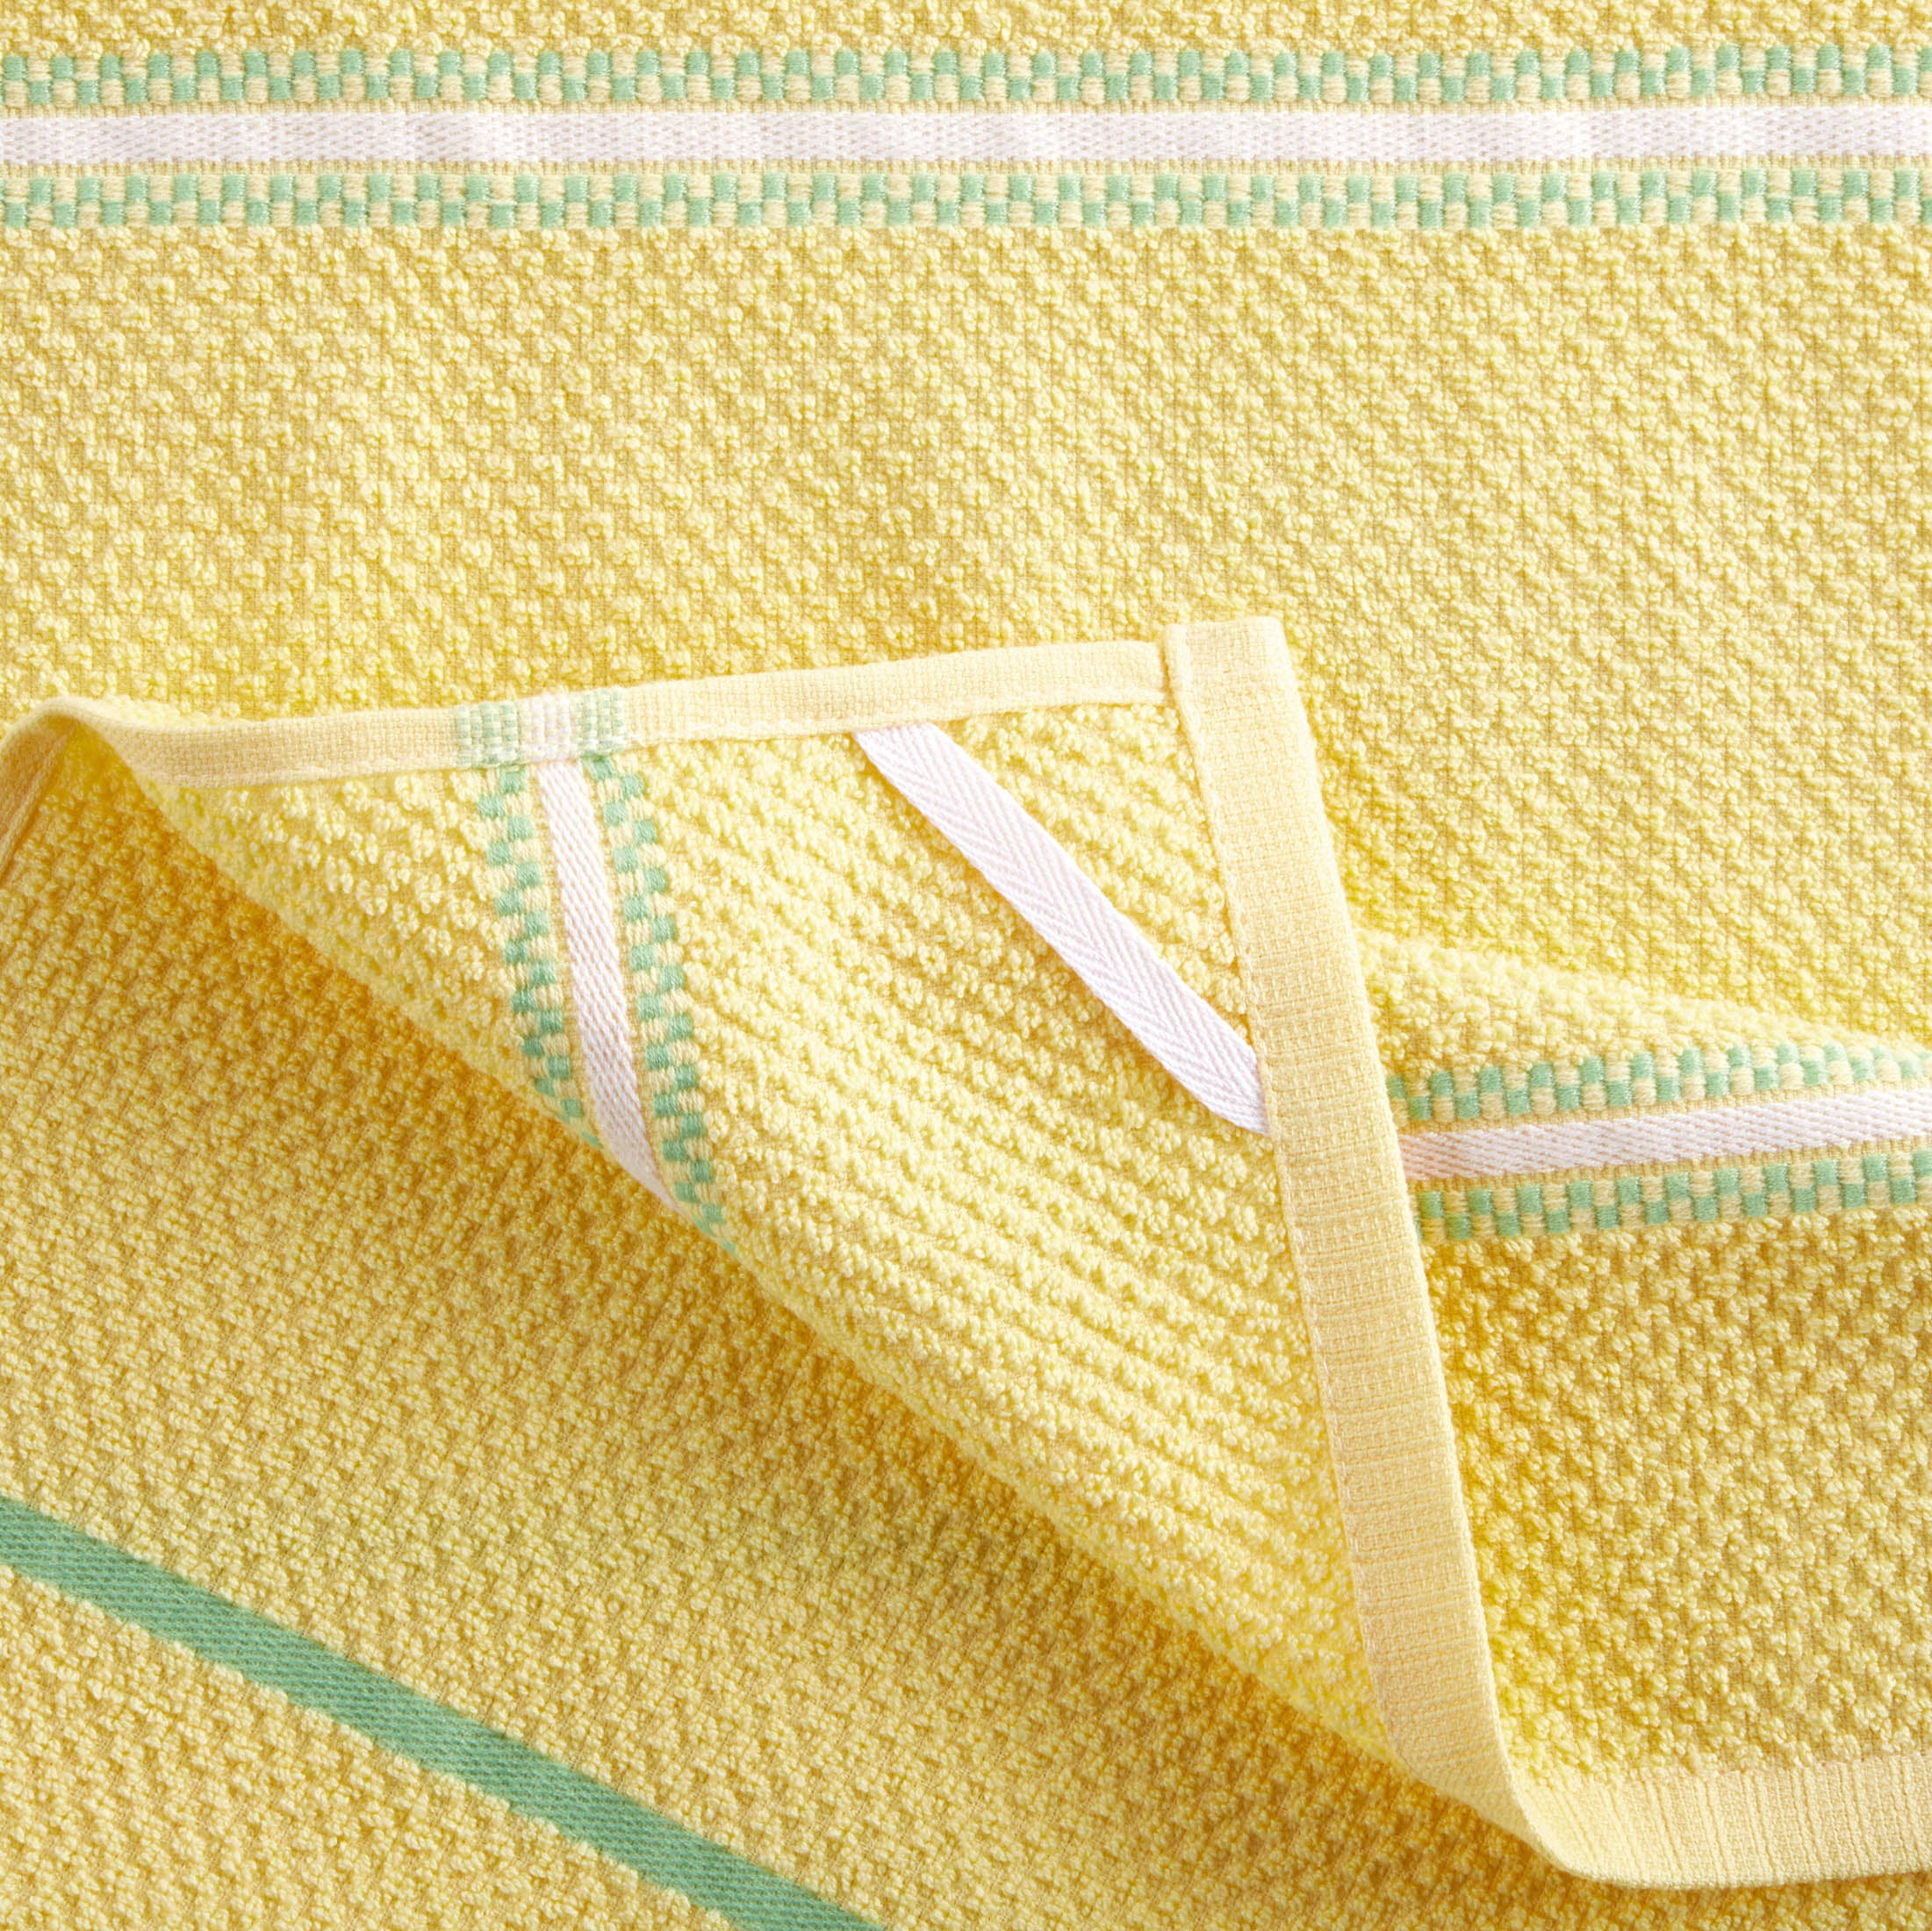 Martha Stewart Morris Striped Kitchen Towels - Aqua/White, 2 pk